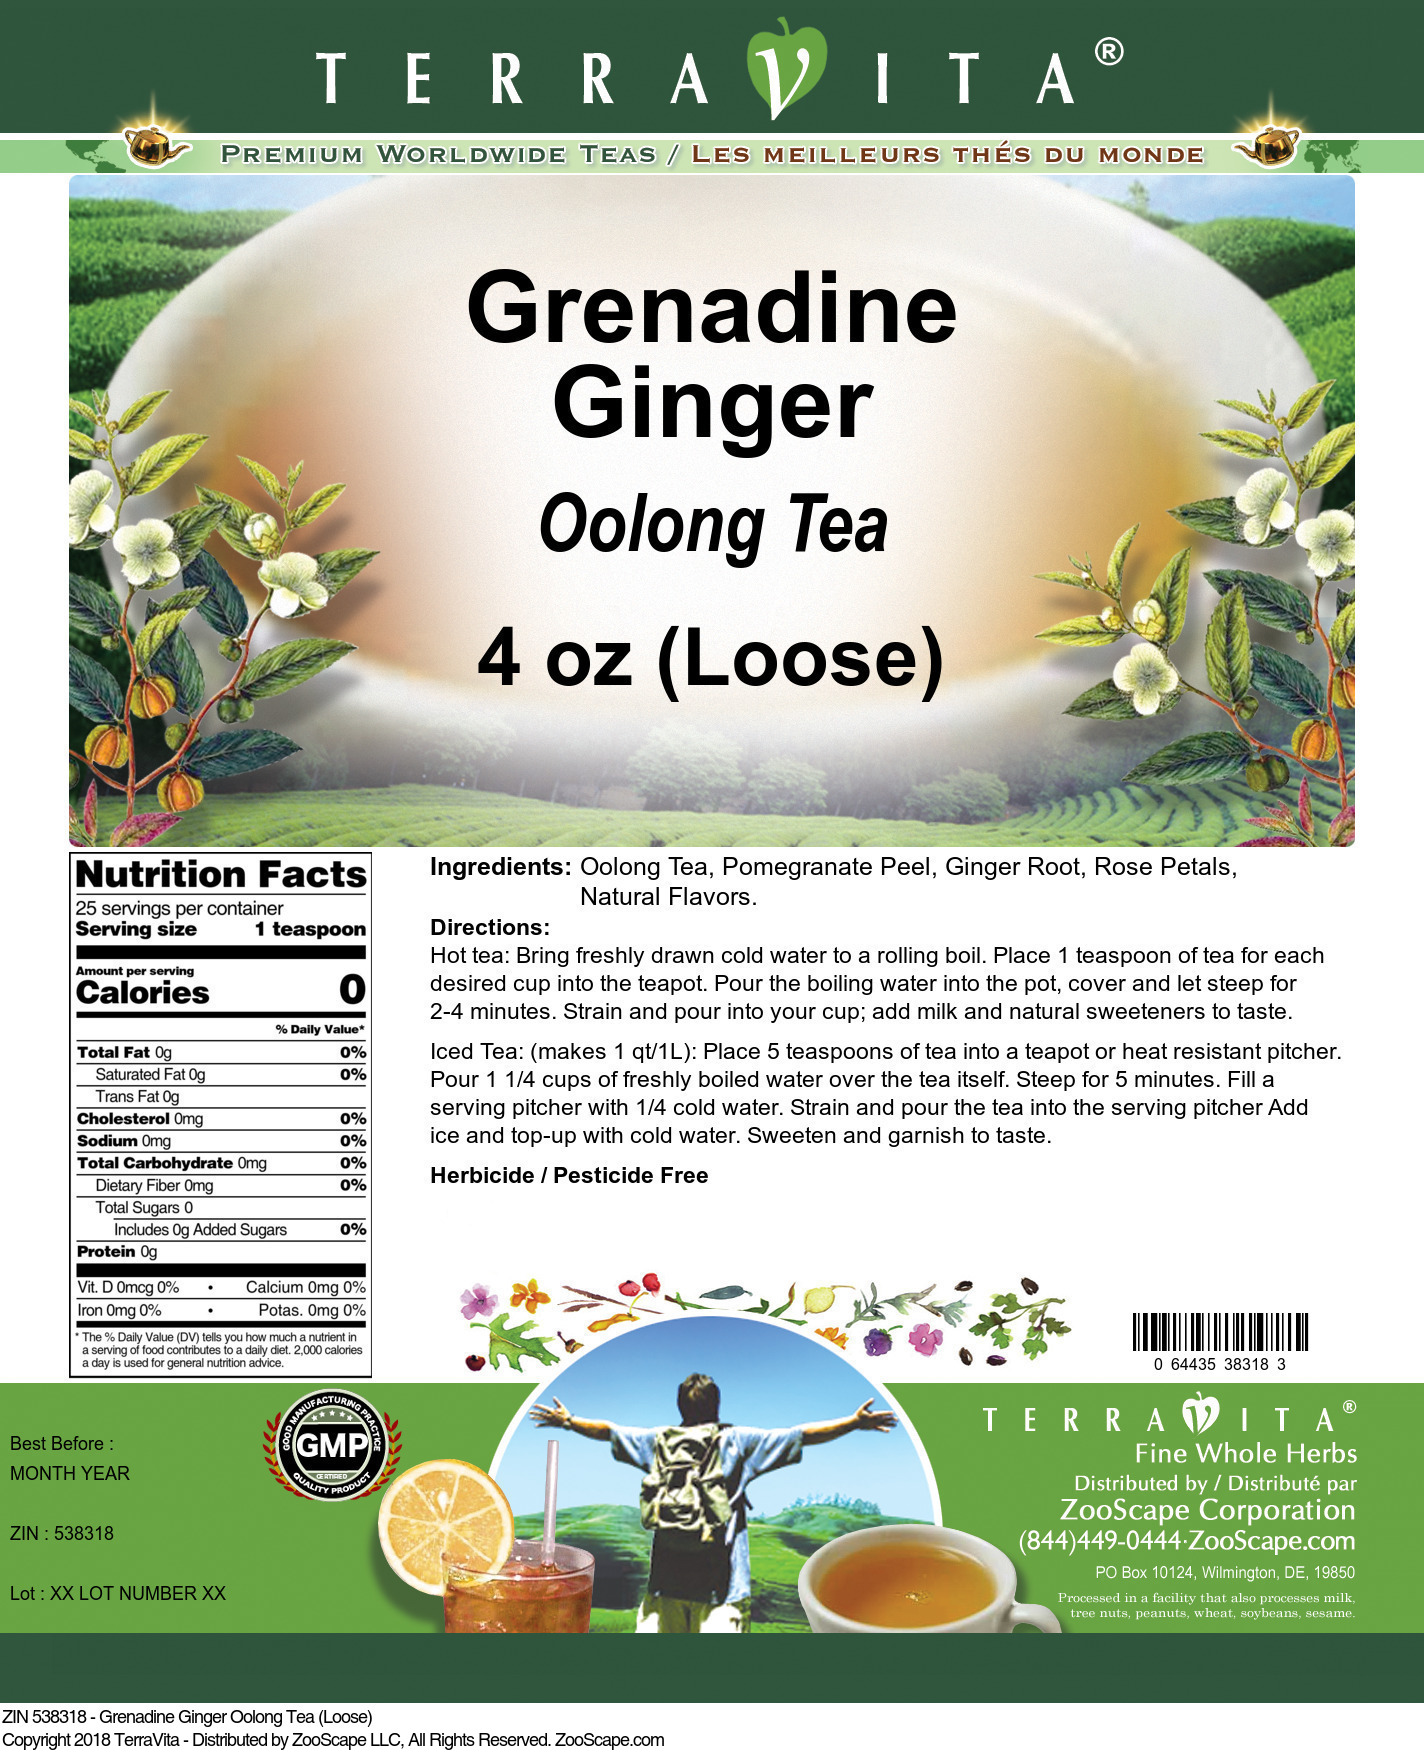 Grenadine Ginger Oolong Tea (Loose) - Label